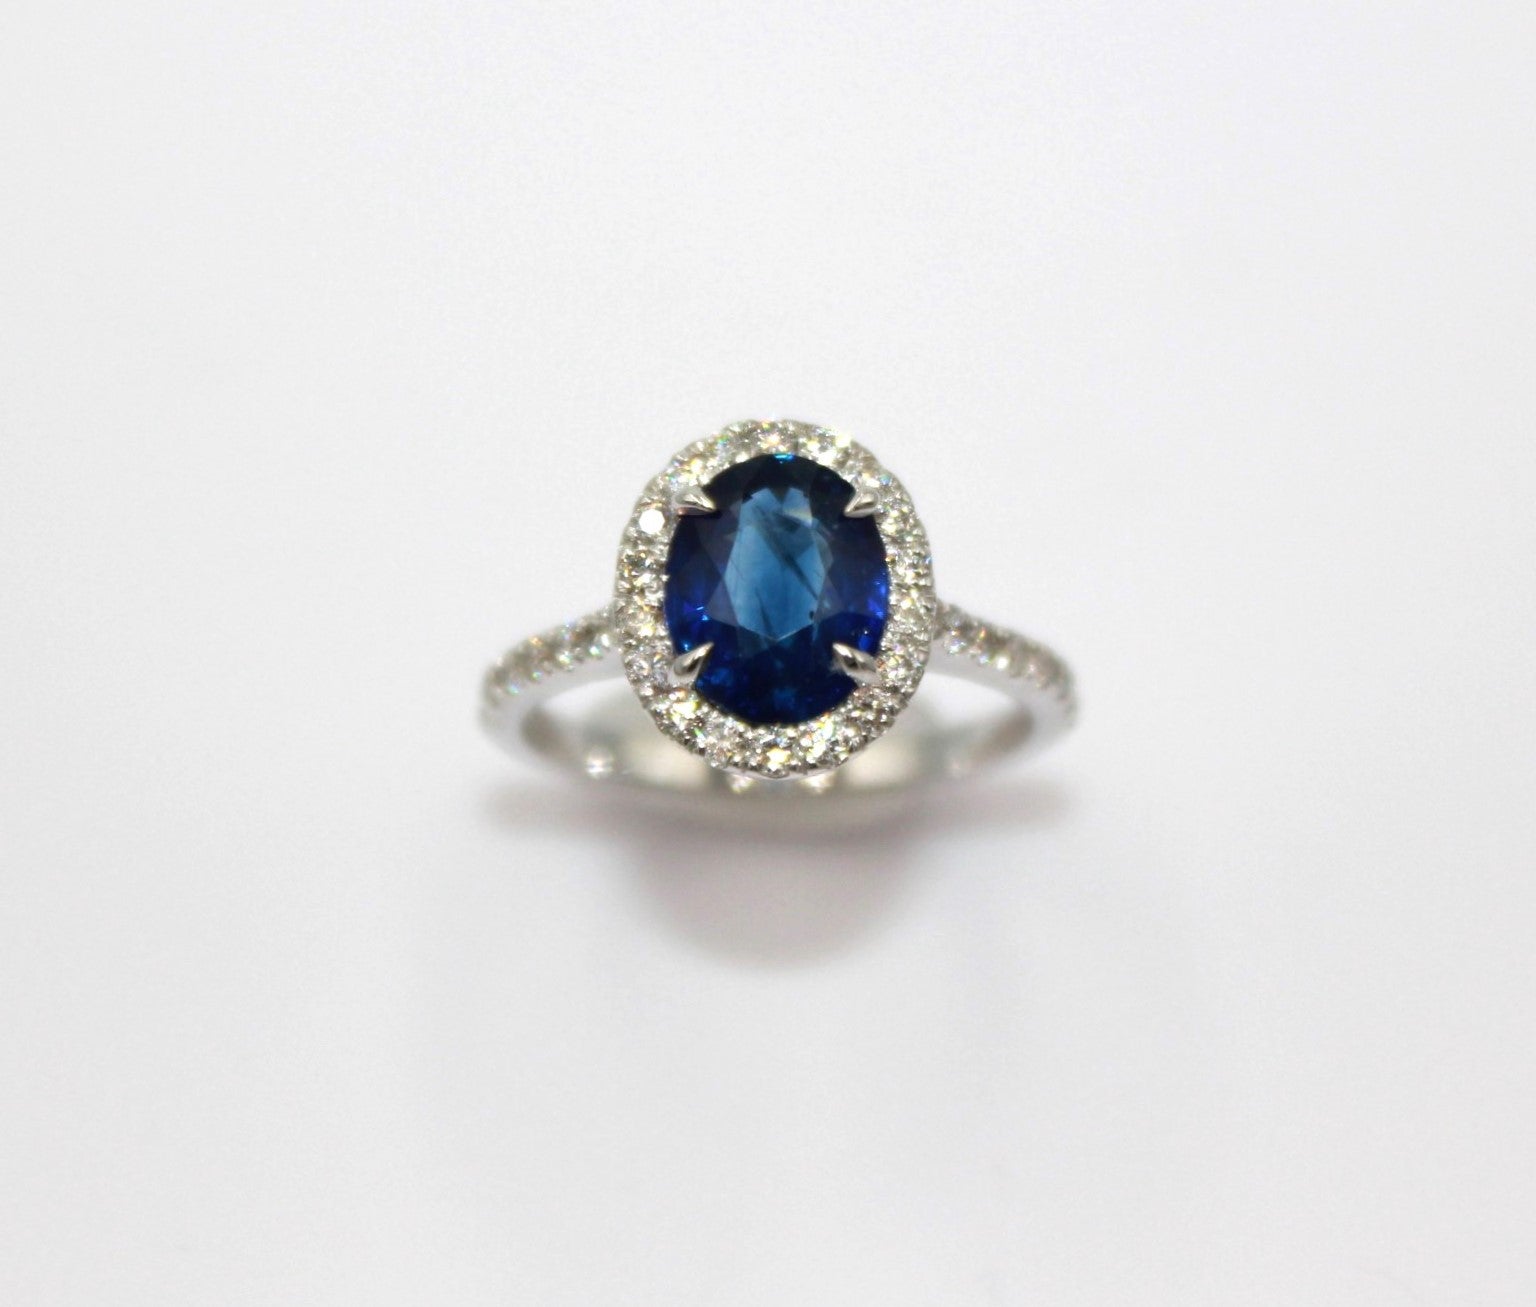 2,34 Karat ovaler Ceylon-Saphir, umrahmt von 34 runden Diamanten mit einem Gesamtgewicht von 0,57 Karat. 

Dieser atemberaubende Saphir-Diamant-Ring wird Ihre Eleganz und Einzigartigkeit unterstreichen. 

Artikel-Details:
- Art: Ring
- Metall: 18K